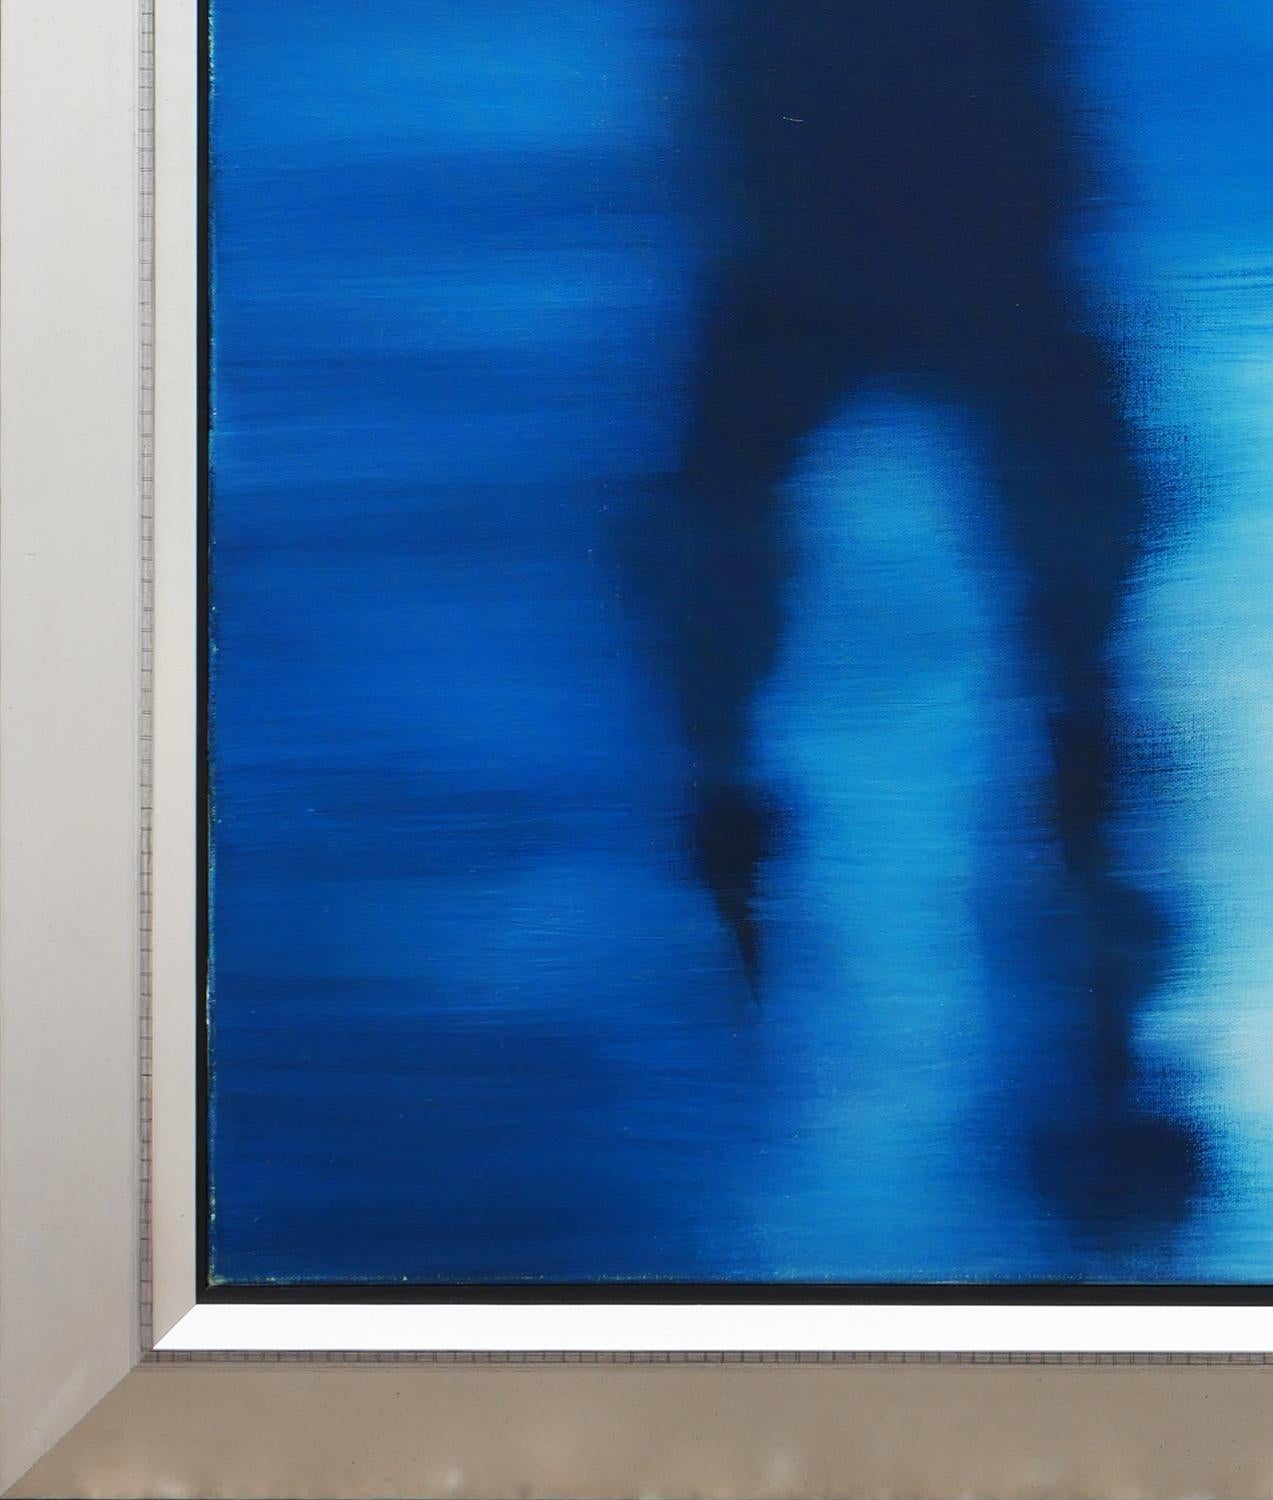 Peinture moderne contemporaine monochrome de l'artiste américaine Cheryl Kelley. L'œuvre présente un ensemble de formes abstraites inspirées des champs de couleurs bleus, qui rappellent sa série de voitures en gros plan. Signé, titré et daté au dos.